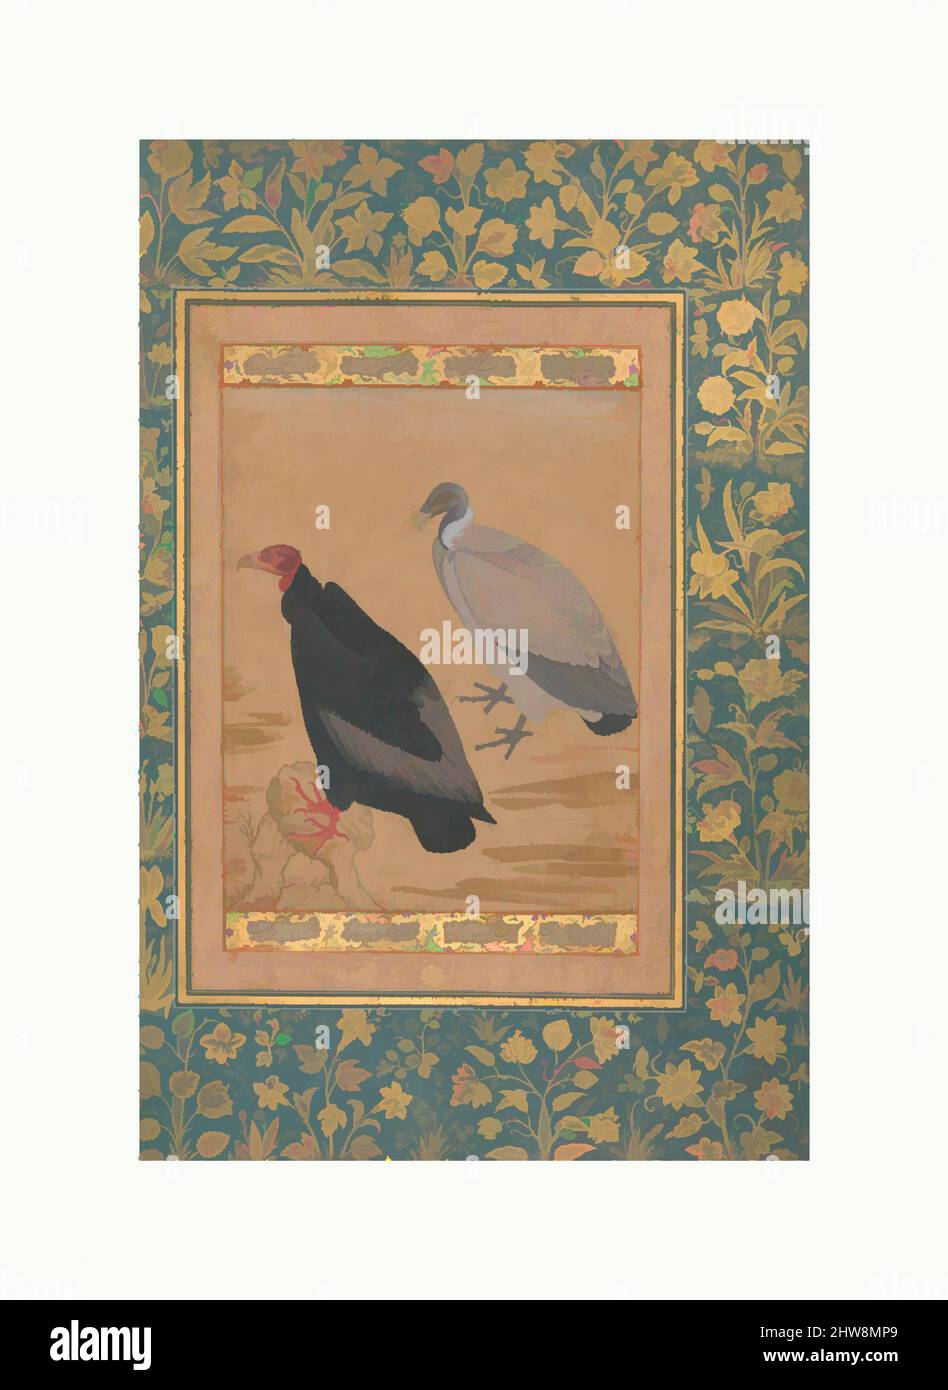 Arte ispirata da Vulture a testa rossa e Vulture a lungo termine, Folio dell'album Shah Jahan, verso: CA. 1615–20; recto: ca. 1535–45, attribuito all'India, inchiostro, acquerello opaco e oro su carta, H. 15 3/8 poll. (39,1 cm), Codices, Pittura di Mansur (attivo ca. 1589–1626), l'artista, opere classiche modernizzate da Artotop con un tuffo di modernità. Forme, colore e valore, impatto visivo accattivante sulle emozioni artistiche attraverso la libertà delle opere d'arte in modo contemporaneo. Un messaggio senza tempo che persegue una nuova direzione selvaggiamente creativa. Artisti che si rivolgono al supporto digitale e creano l'NFT Artotop Foto Stock